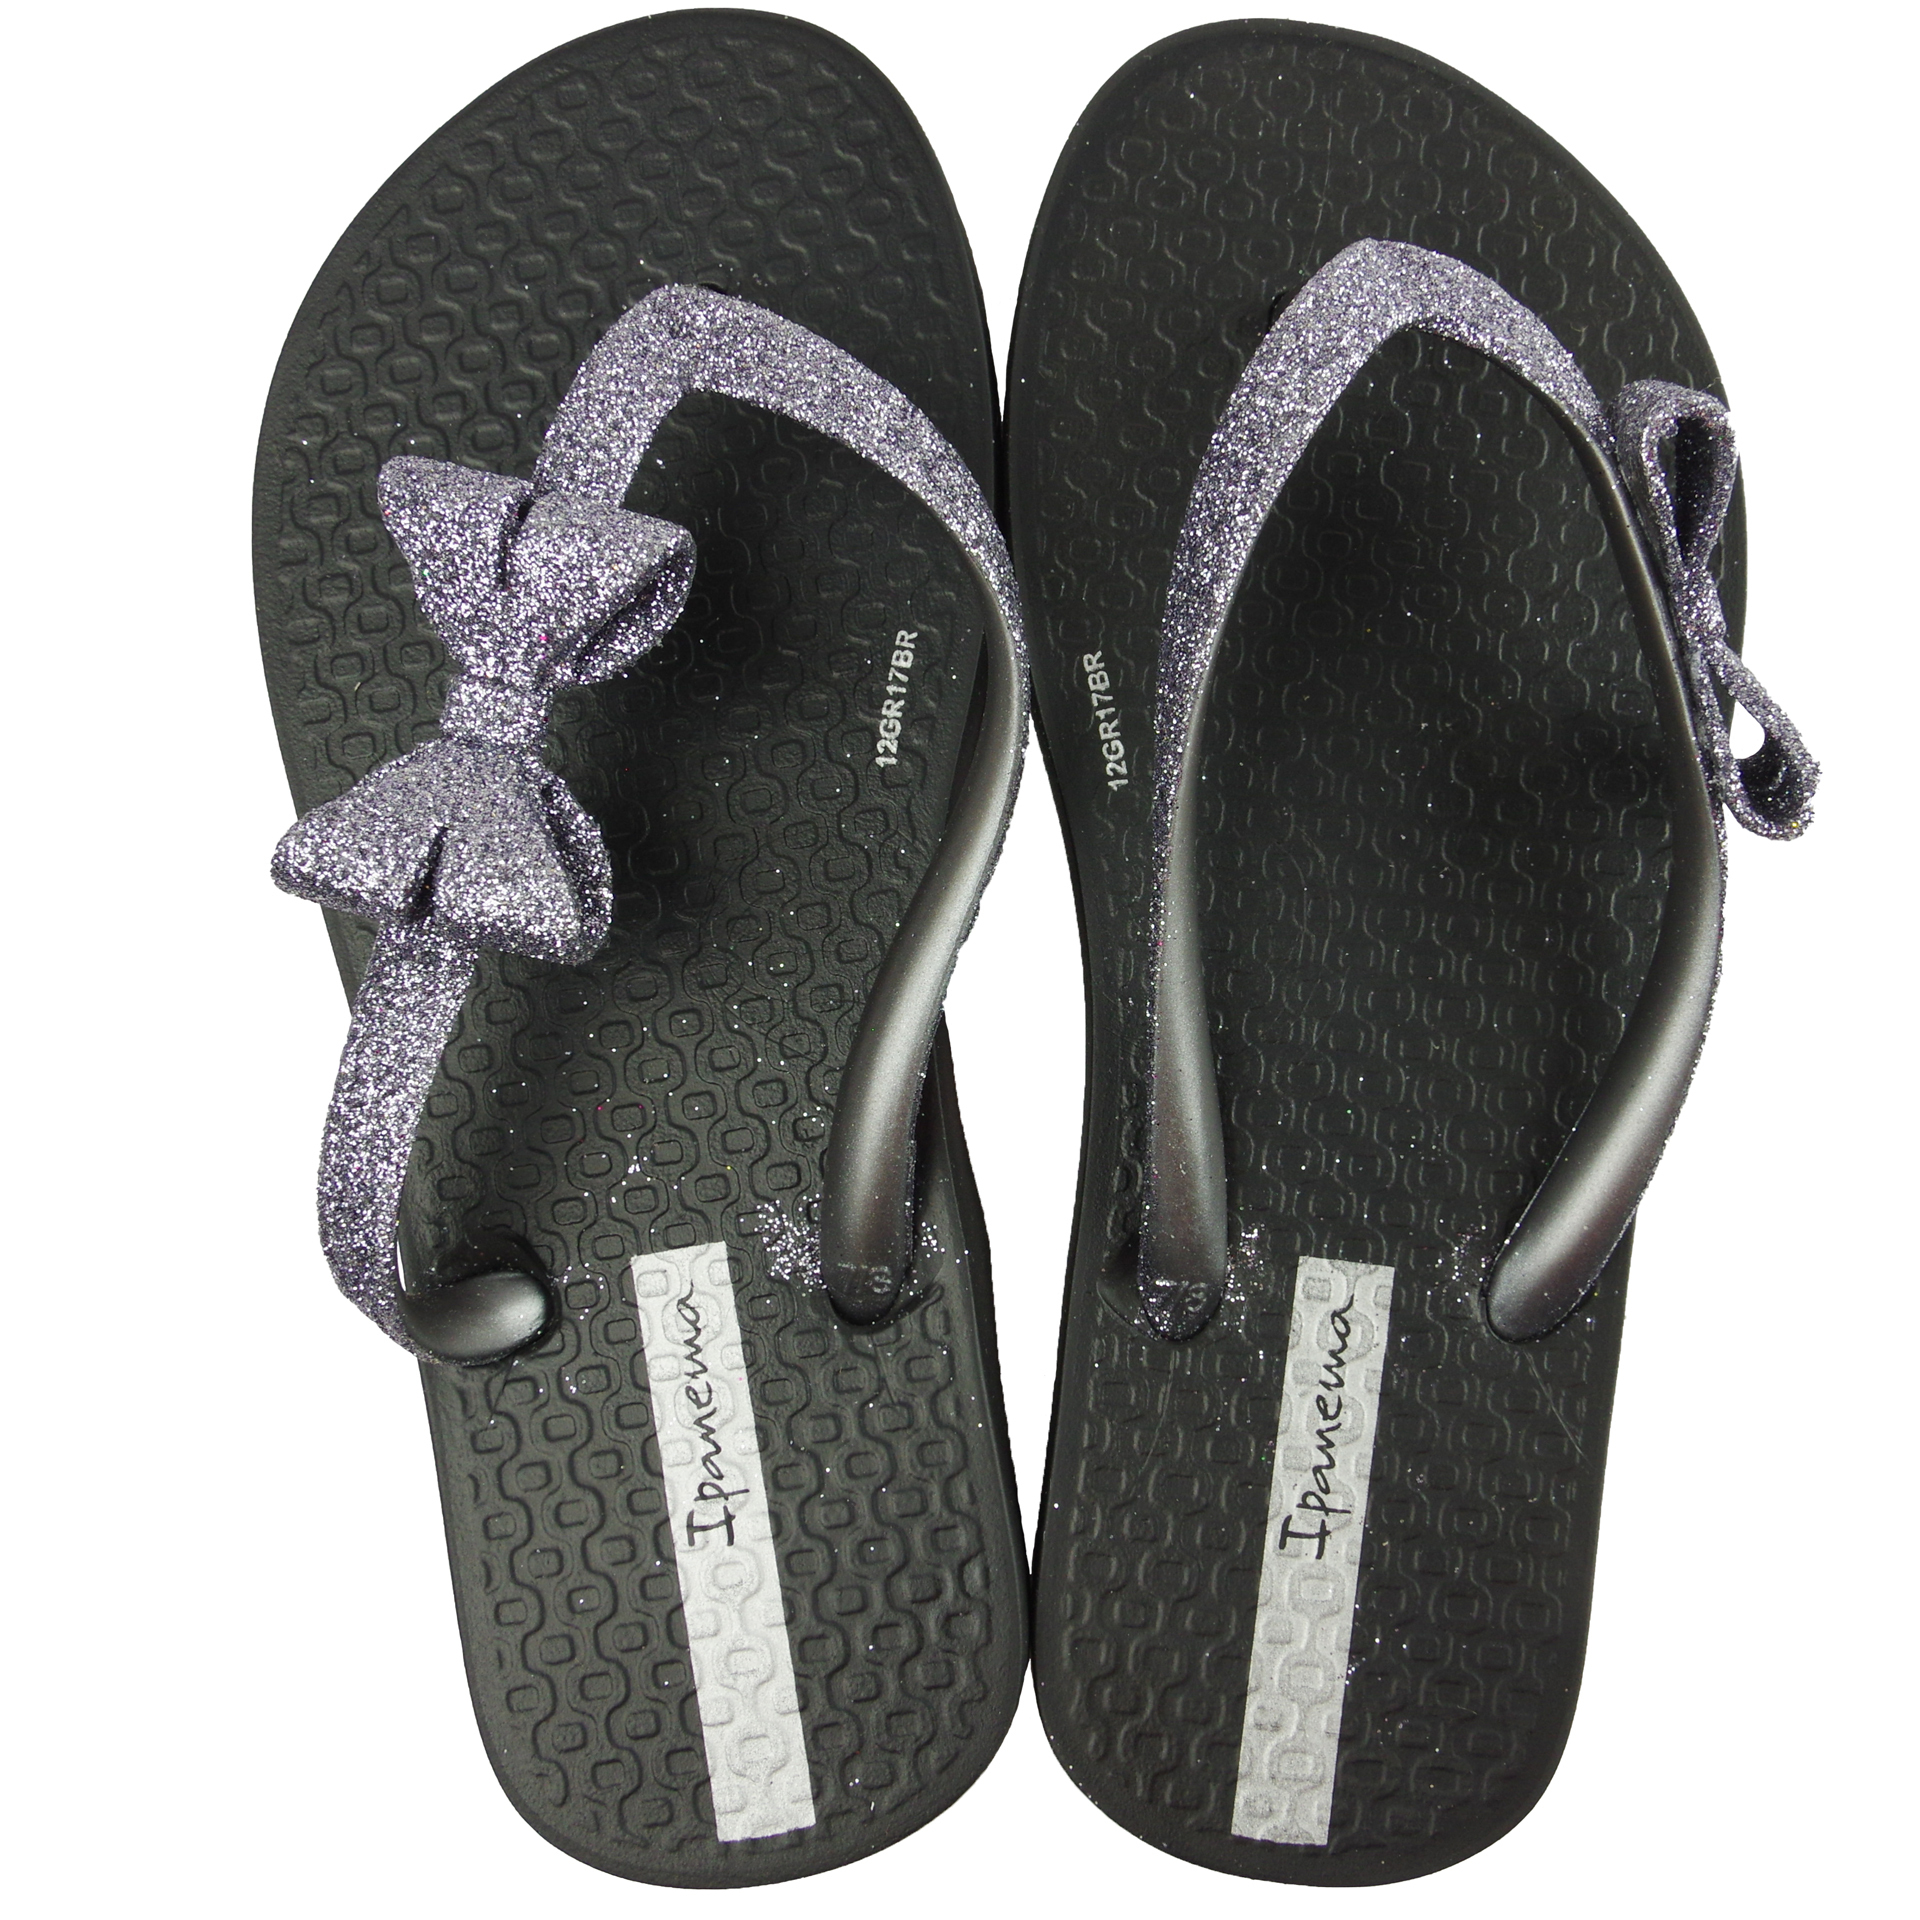 Пляжная обувь для девочки - ipanema шлепки (1412) 25-38 размеры, цвет Черный – Sole Kids